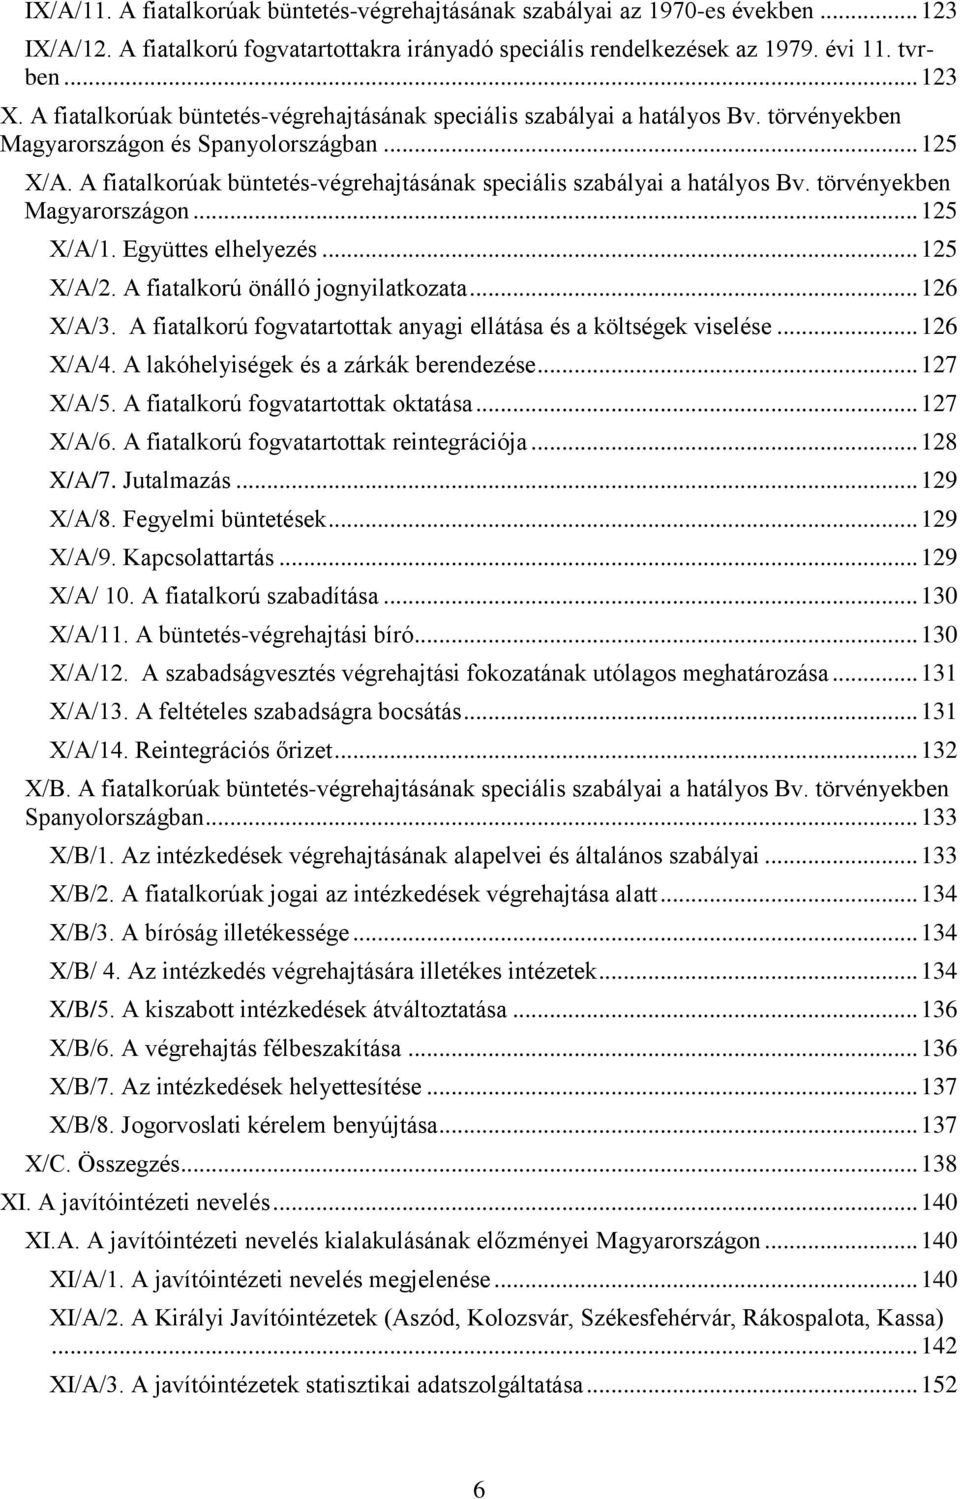 A fiatalkorúak büntetés-végrehajtásának speciális szabályai a hatályos Bv. törvényekben Magyarországon... 125 X/A/1. Együttes elhelyezés... 125 X/A/2. A fiatalkorú önálló jognyilatkozata... 126 X/A/3.